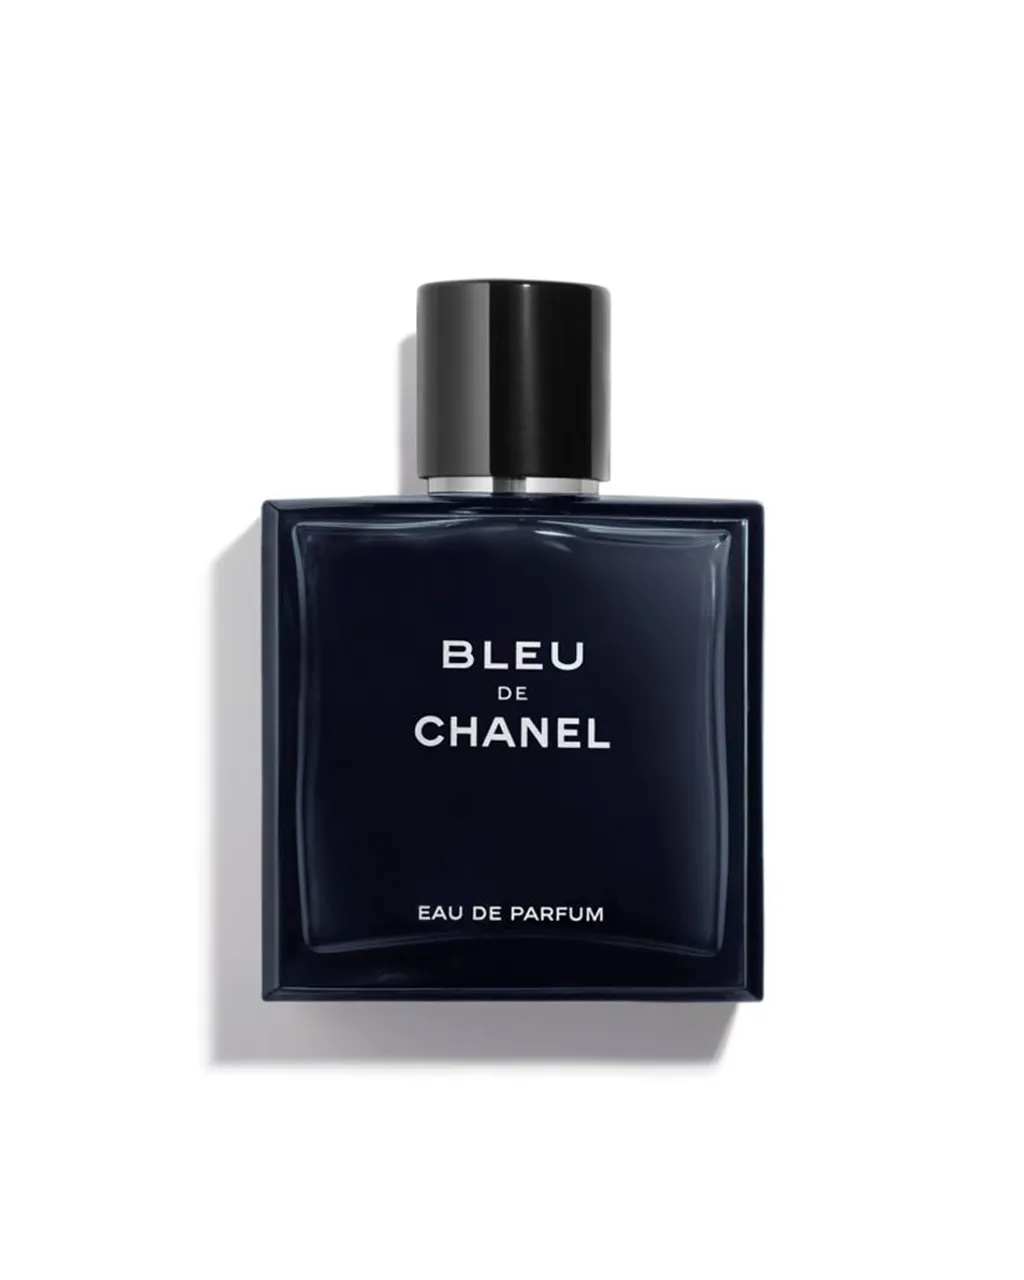 Chanel Bleu De Chanel EAU DE PARFUM VERSTUIVER 50 ML